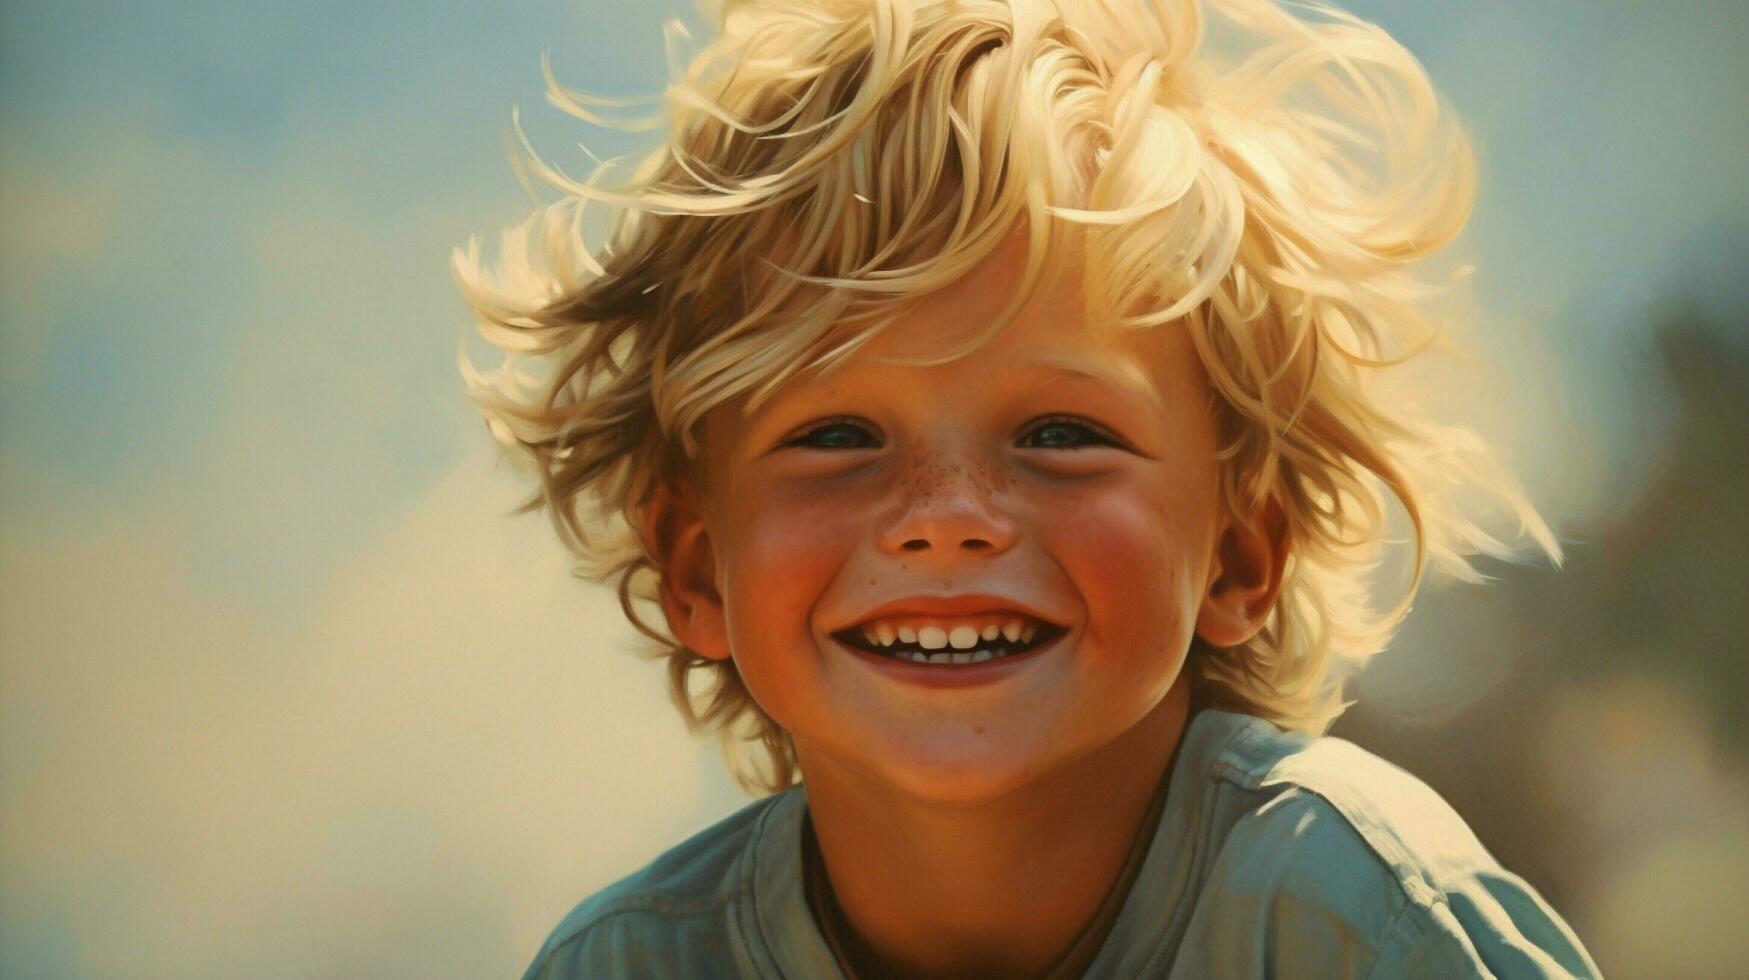 glimlachen vrolijk kind met blond haar- straalt uit geluk foto